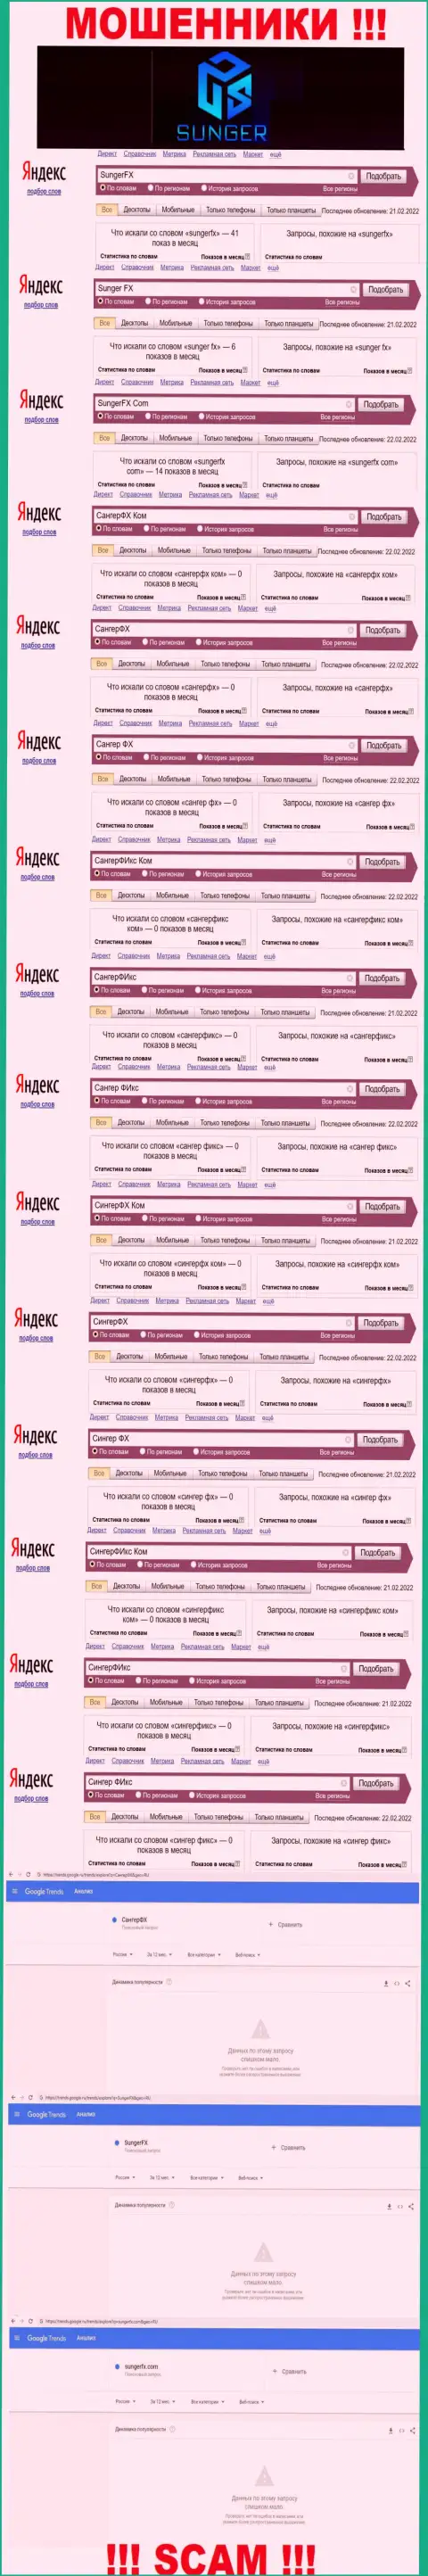 SungerFX Com - это МОШЕННИКИ, сколько раз искали в поисковиках интернета указанную организацию